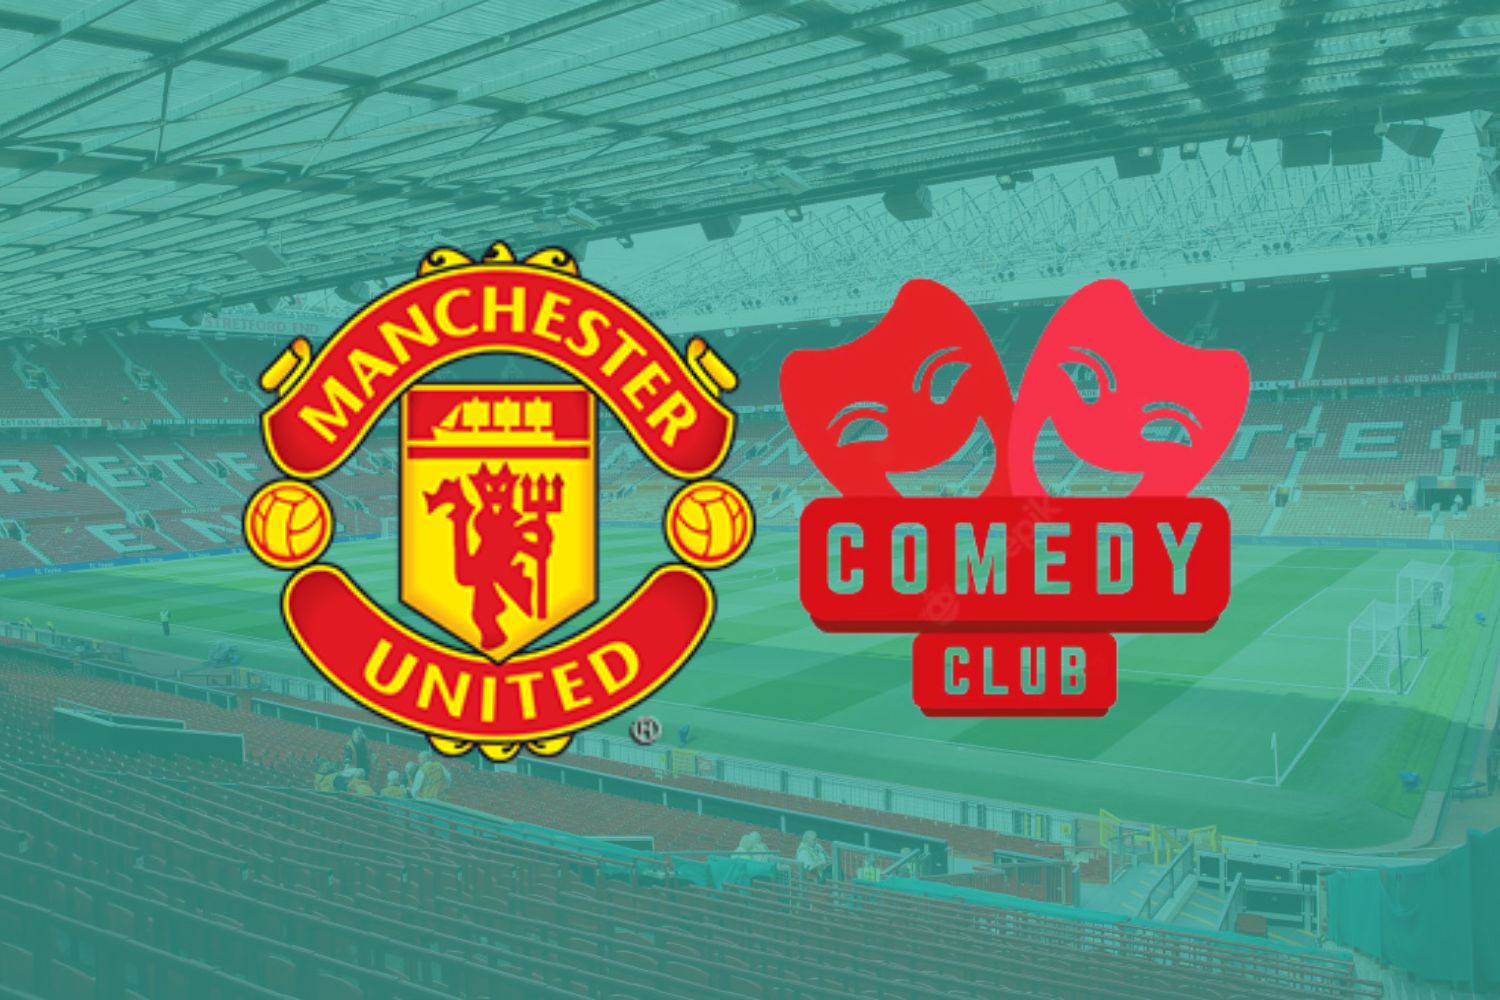 Manchester United: a football club or comedy club?